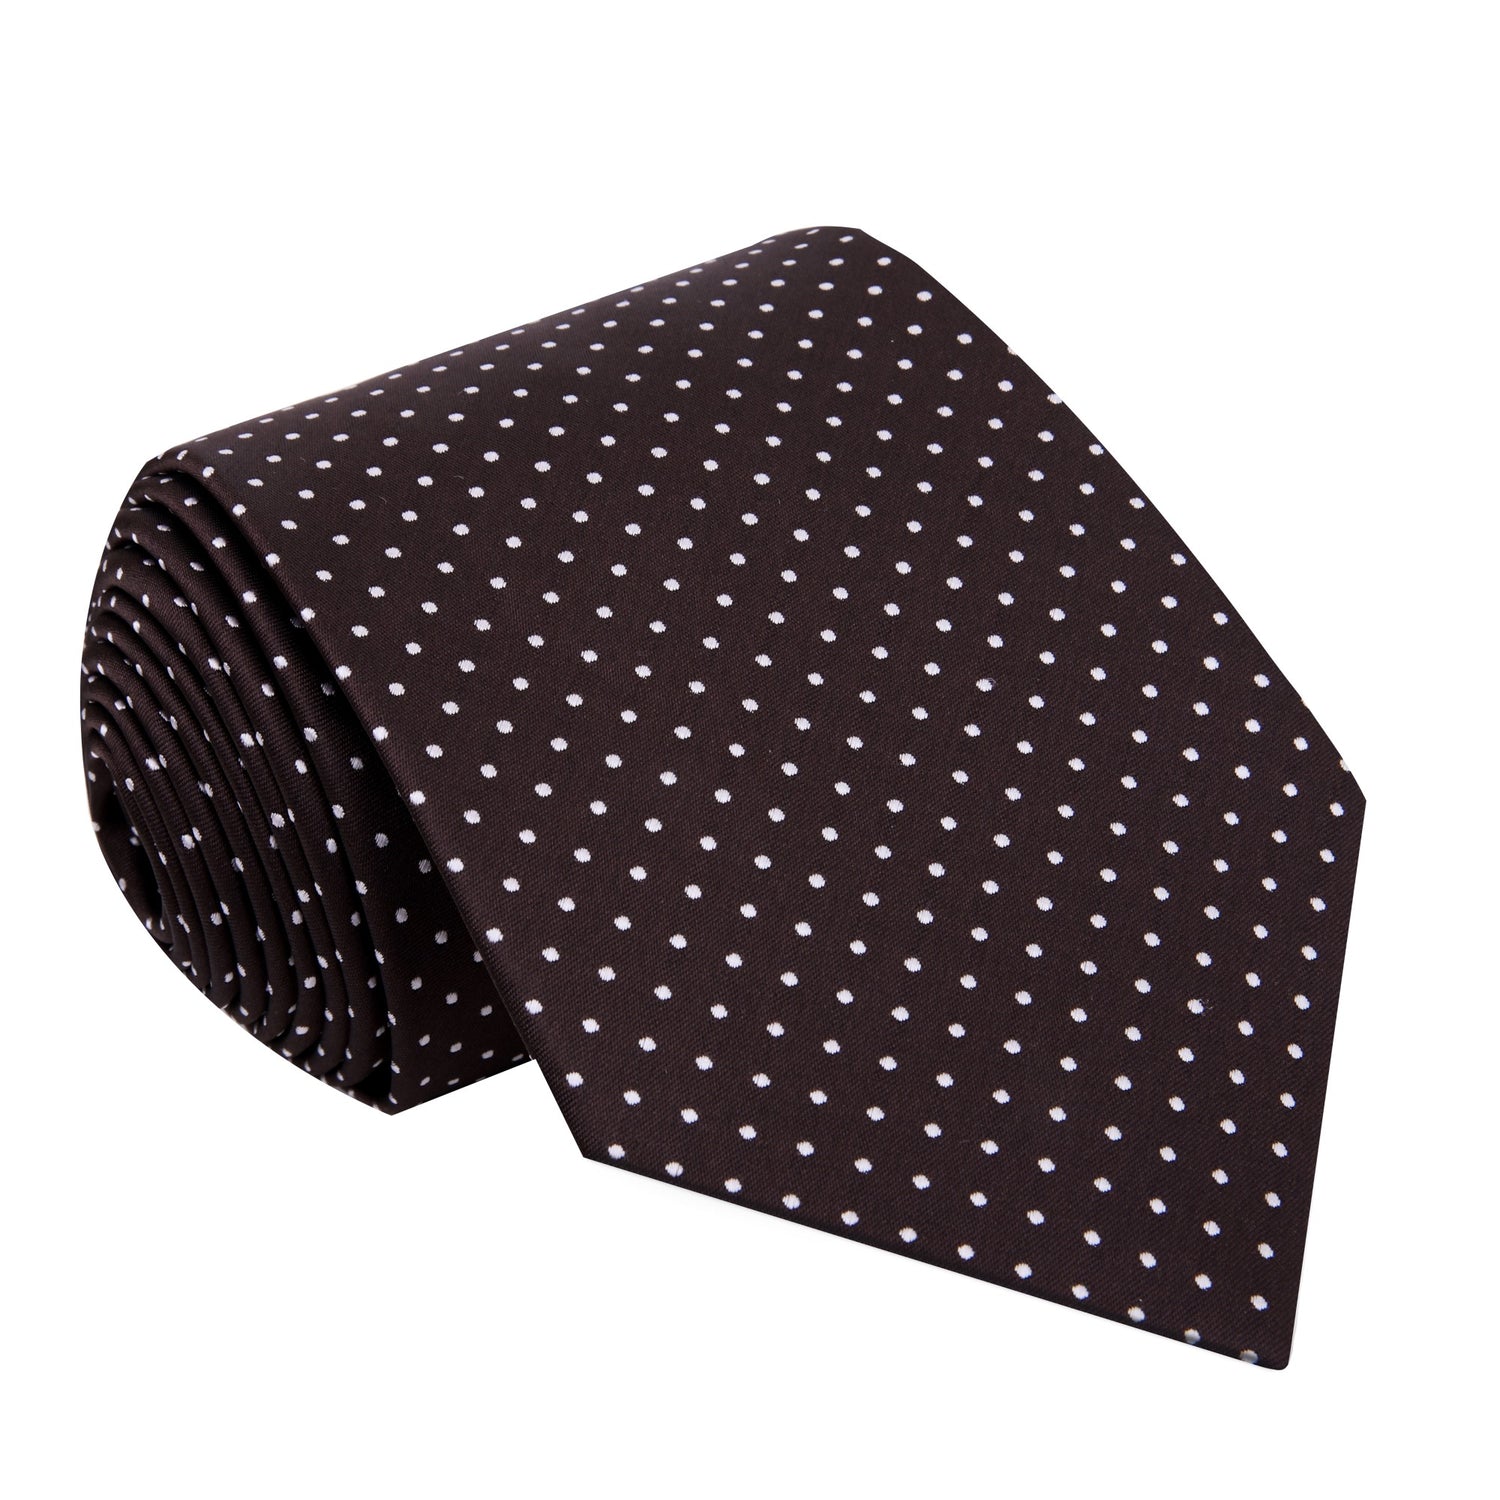 A Brown, White Polka Dot Pattern Silk Necktie